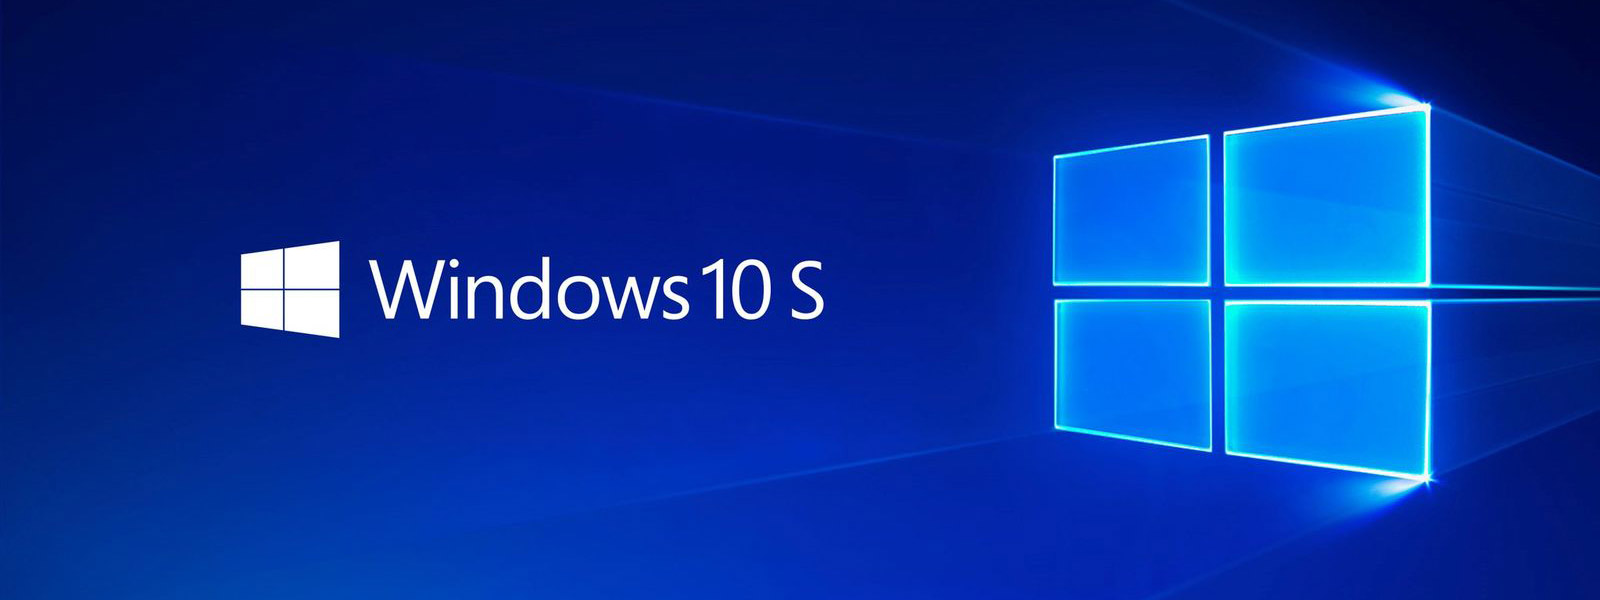 Sẽ không còn Windows 10 S, chuyển thành chế độ "S Mode" trong Windows 10 bình thường?